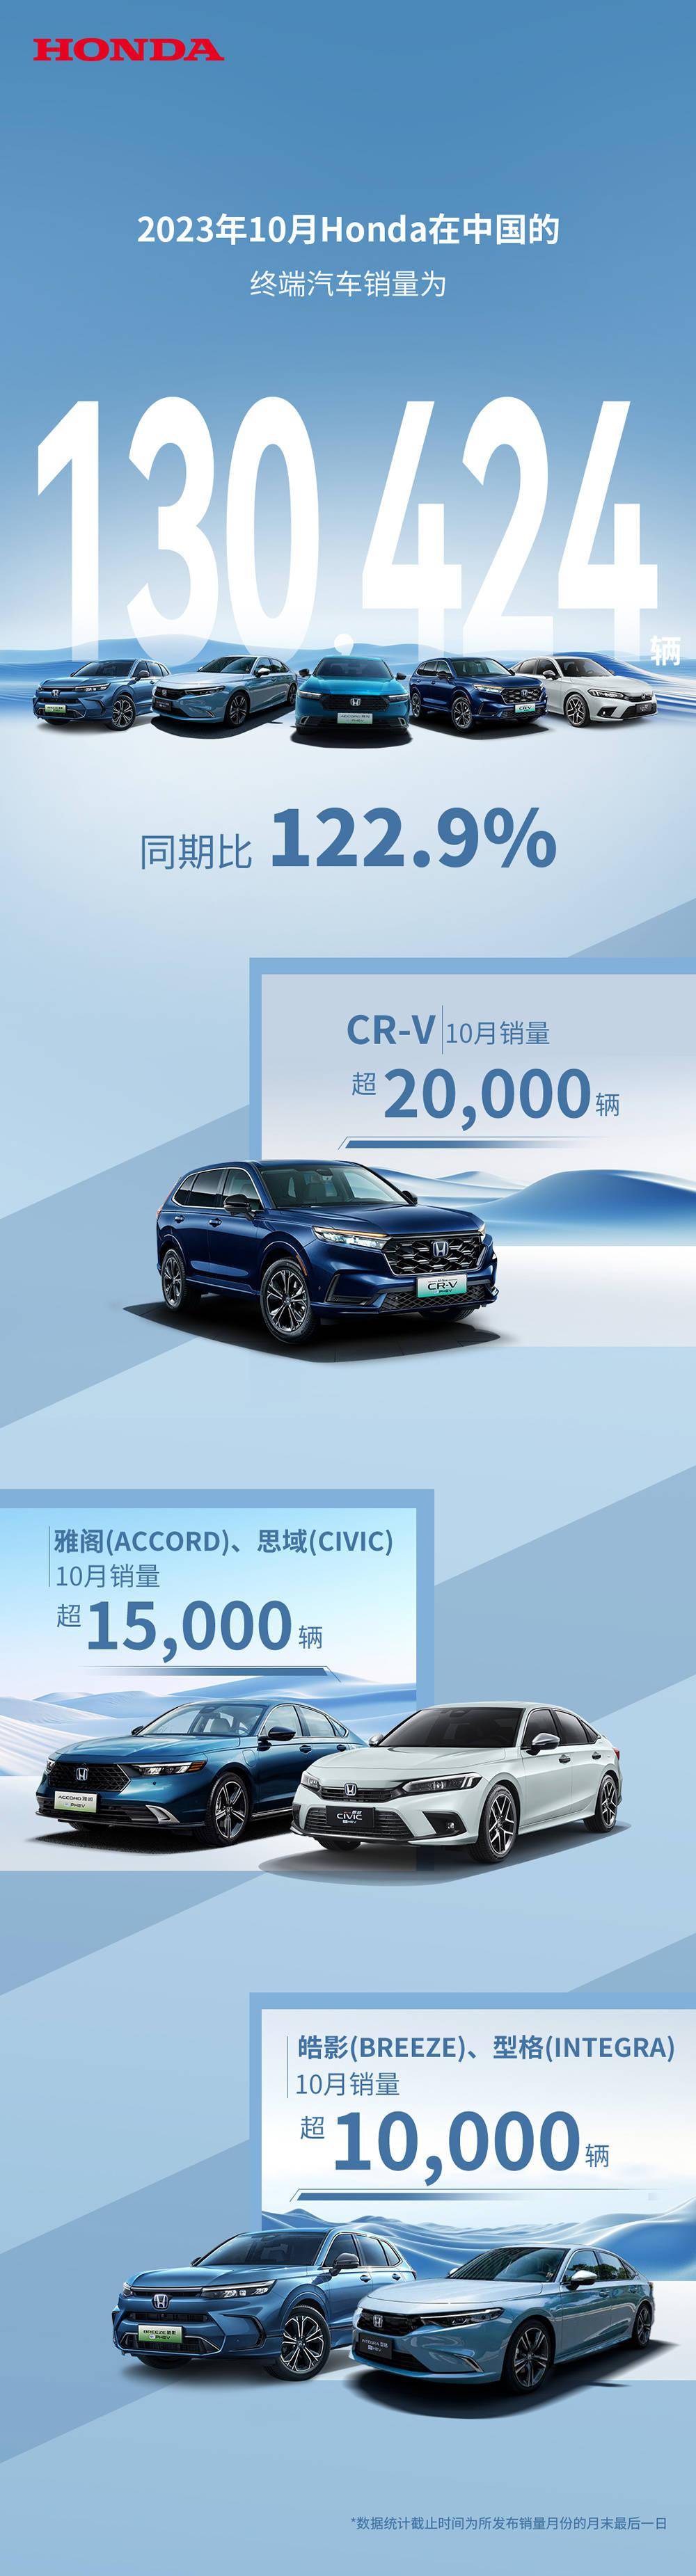 本田中国 10 月汽车销量 130424 辆，同比增长 122.9%